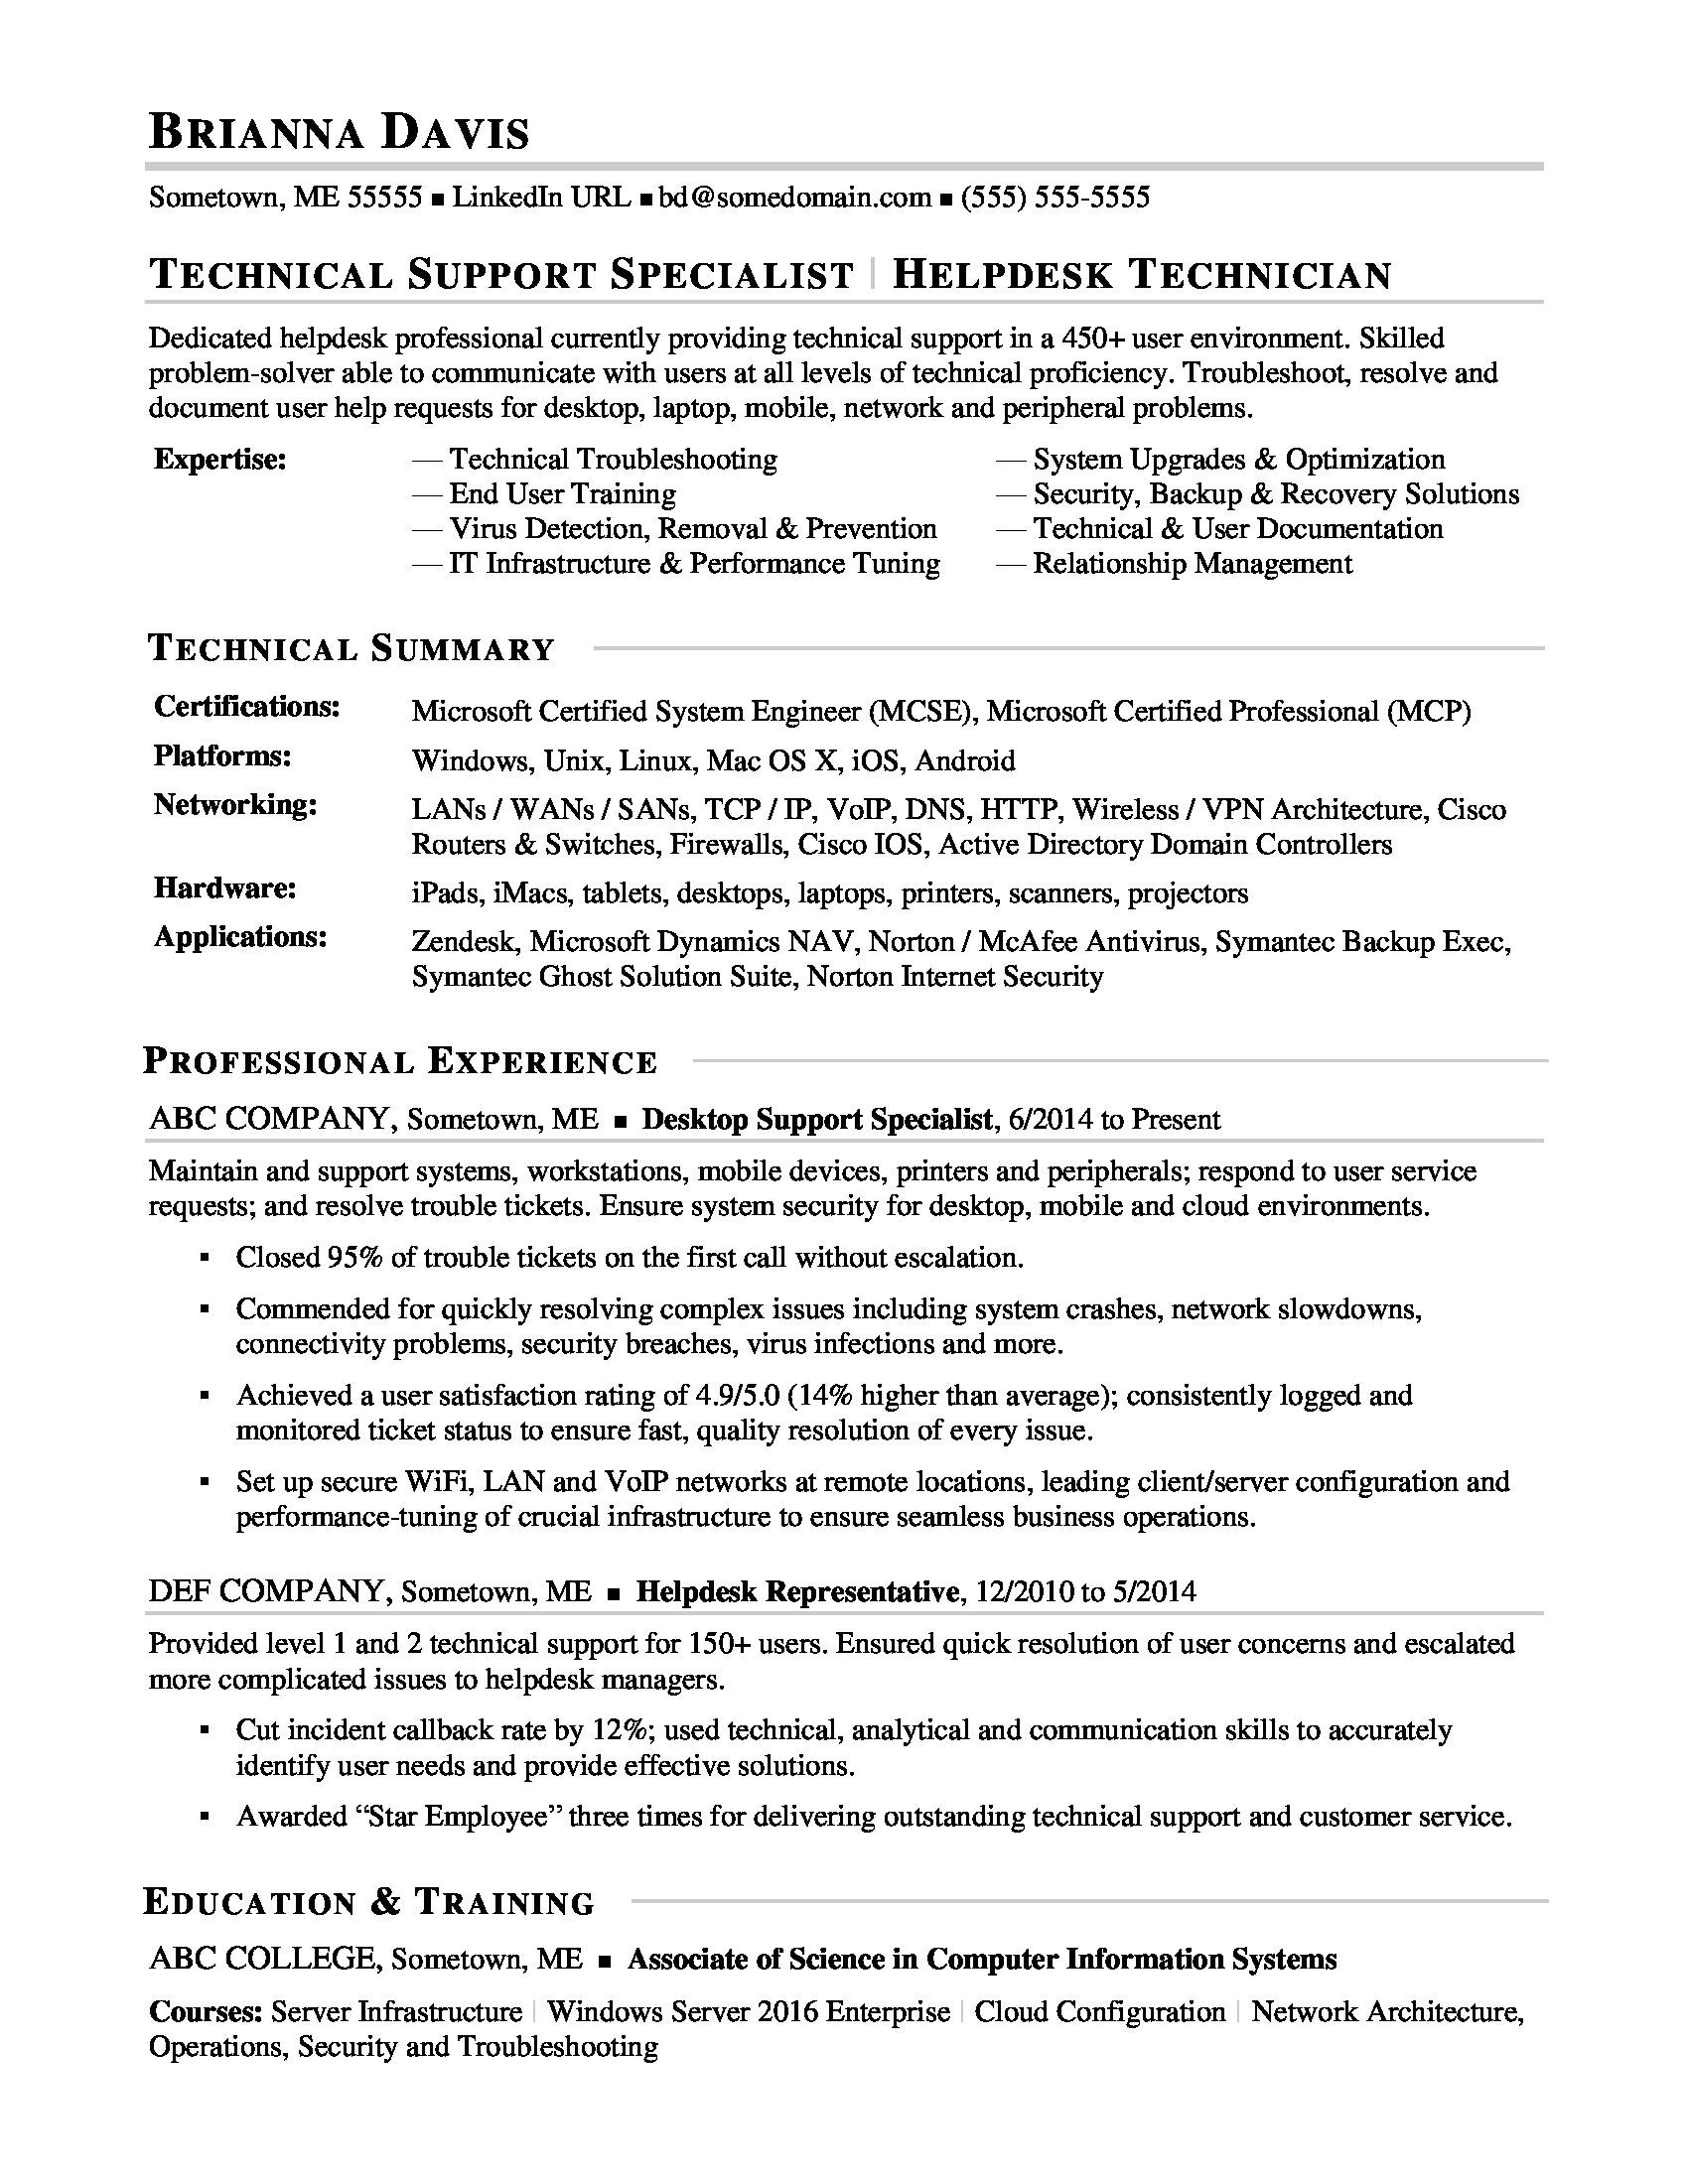 Sample Enret Level Help Desk toer 1 Resume Sample Resume for Experienced It Help Desk Employee Monster.com